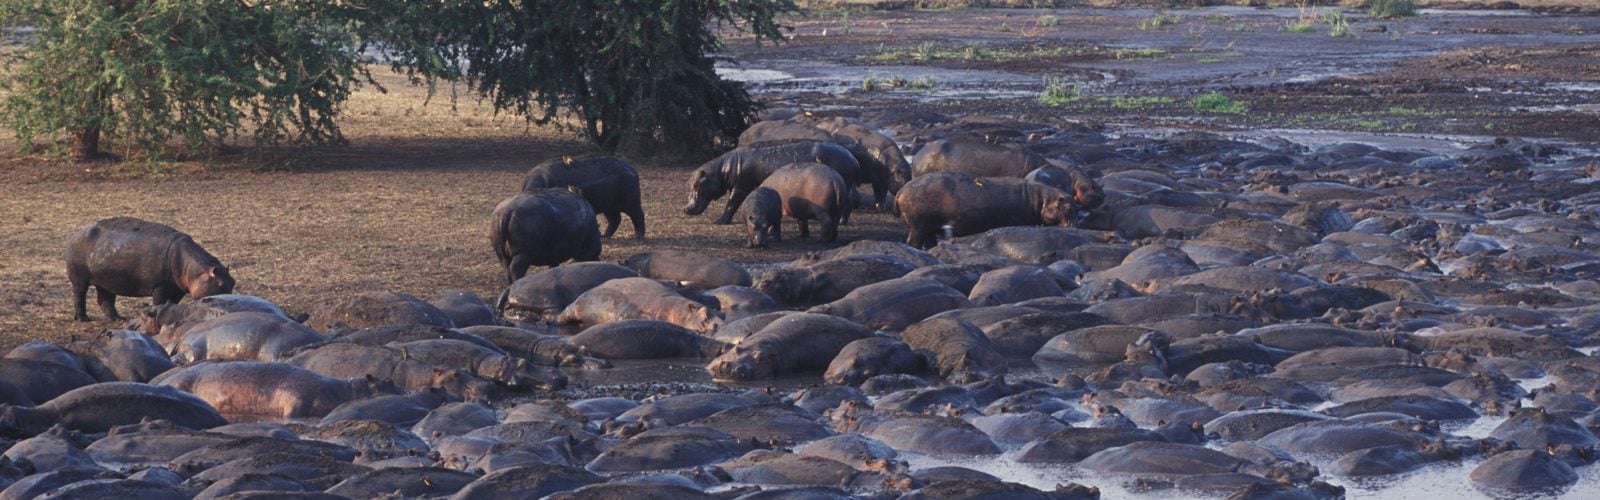 chada-katavi-hippos-kenya